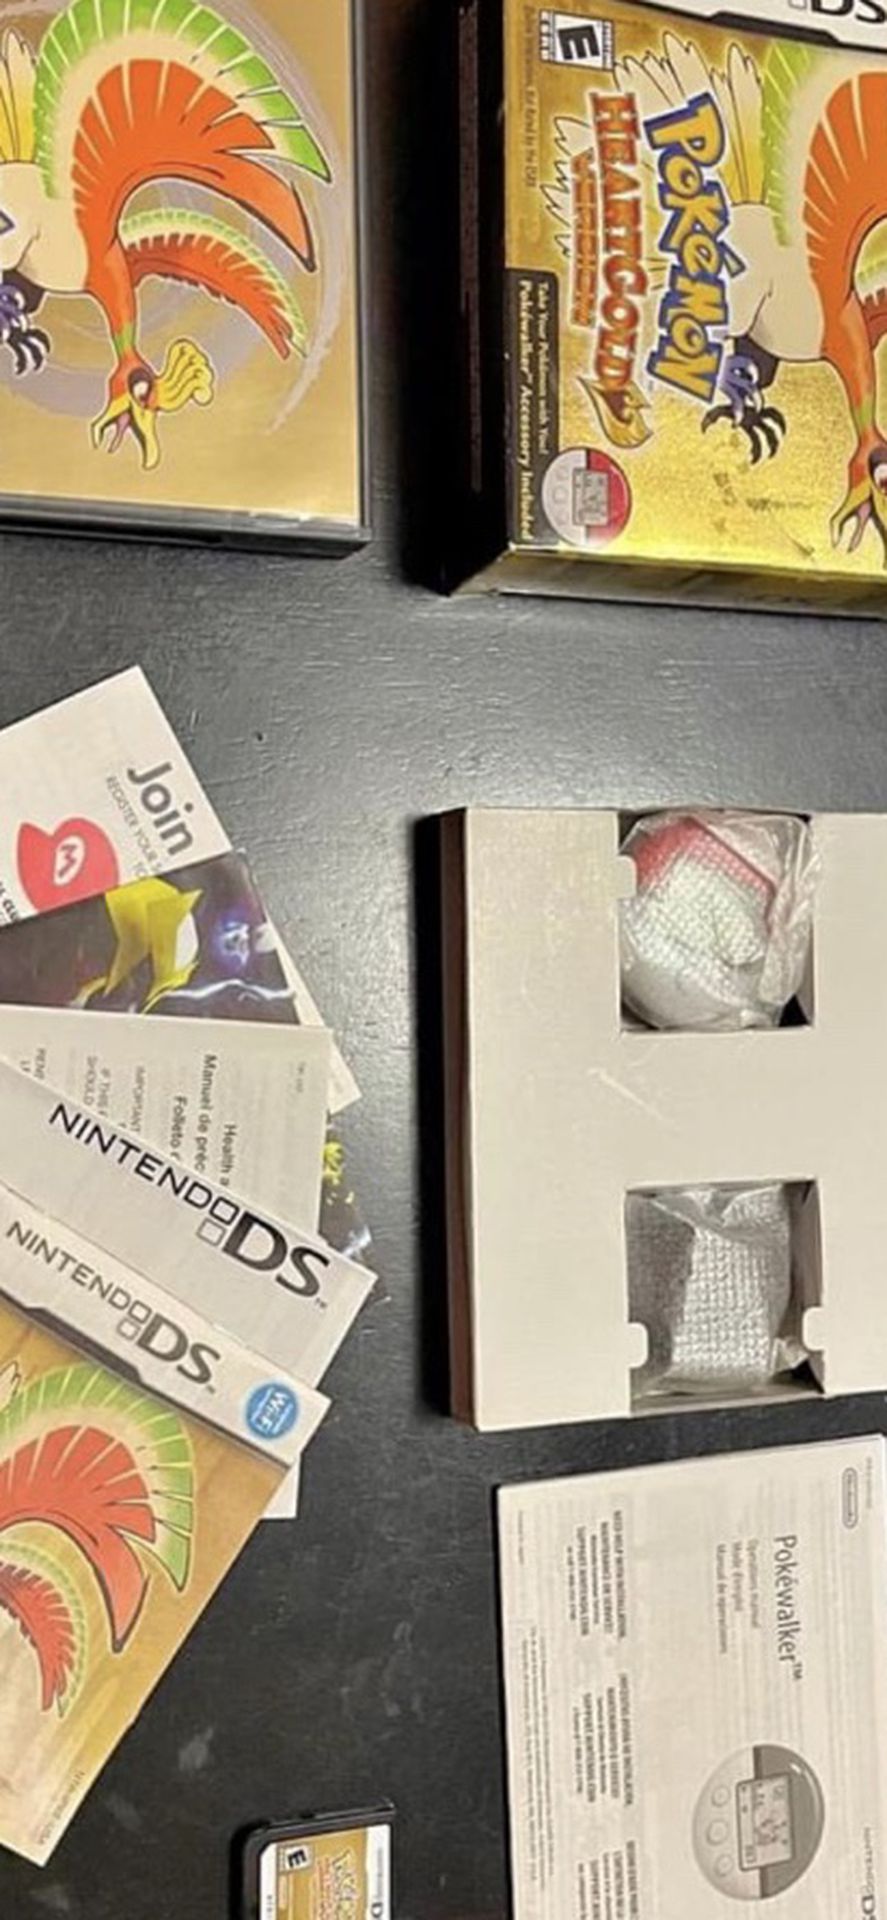 Pokémon Heartgold Cib In Box With Poke walker